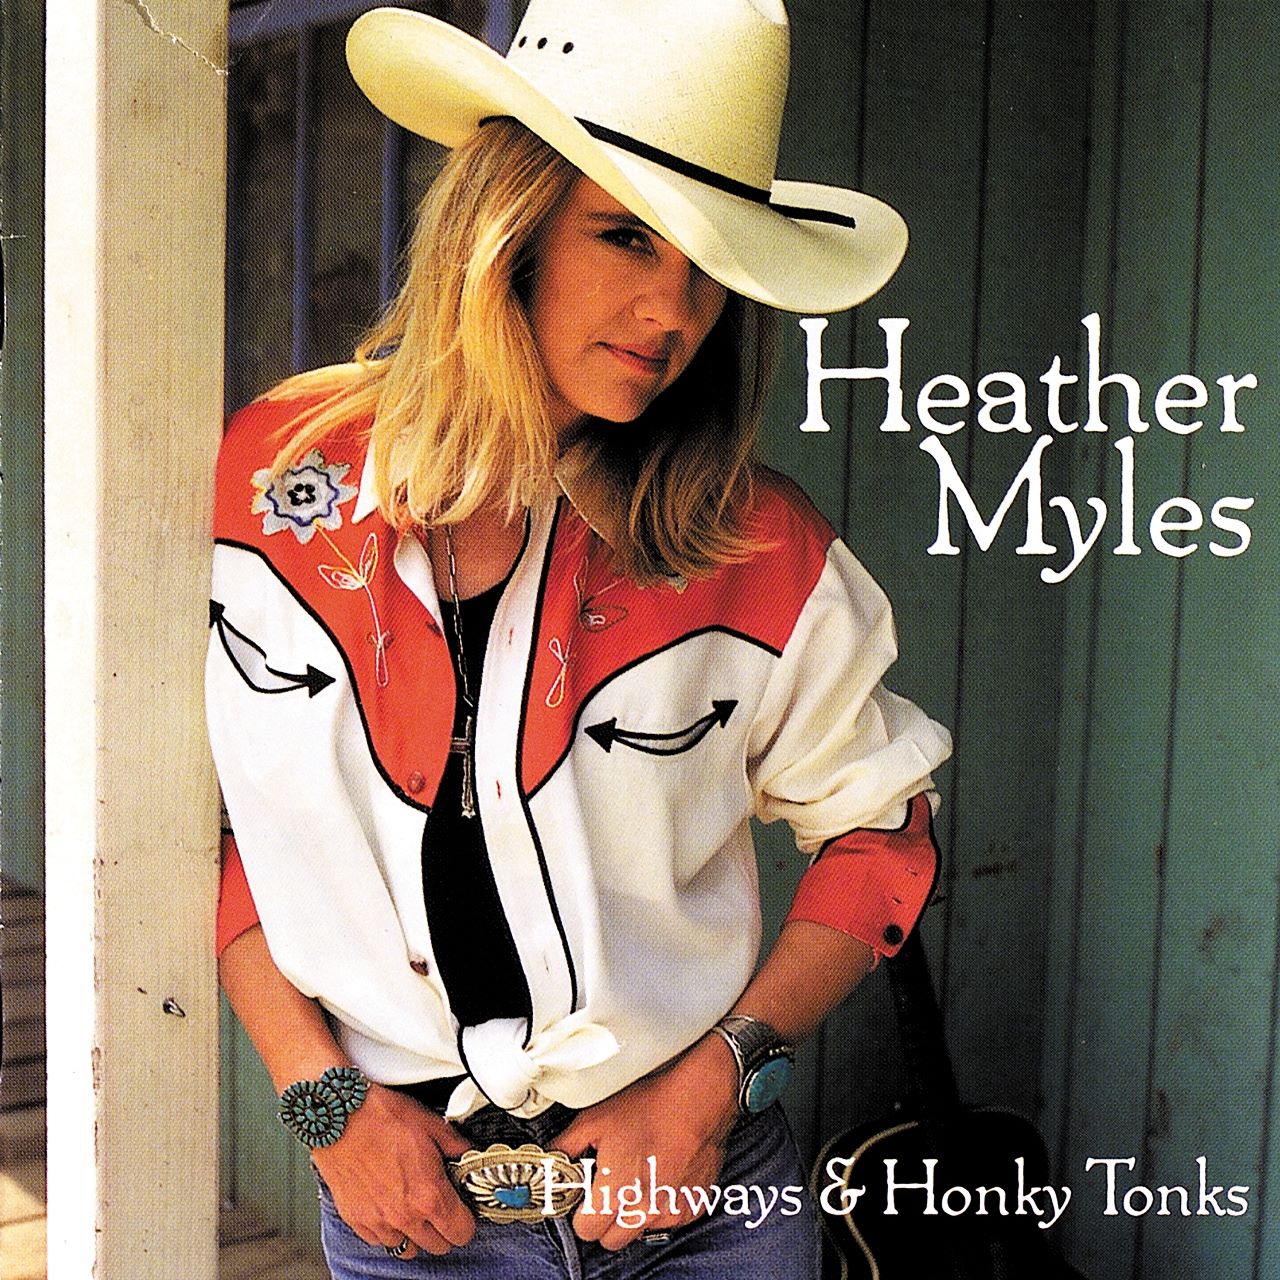 Heather Myles - Highways & Honky Tonks cover album